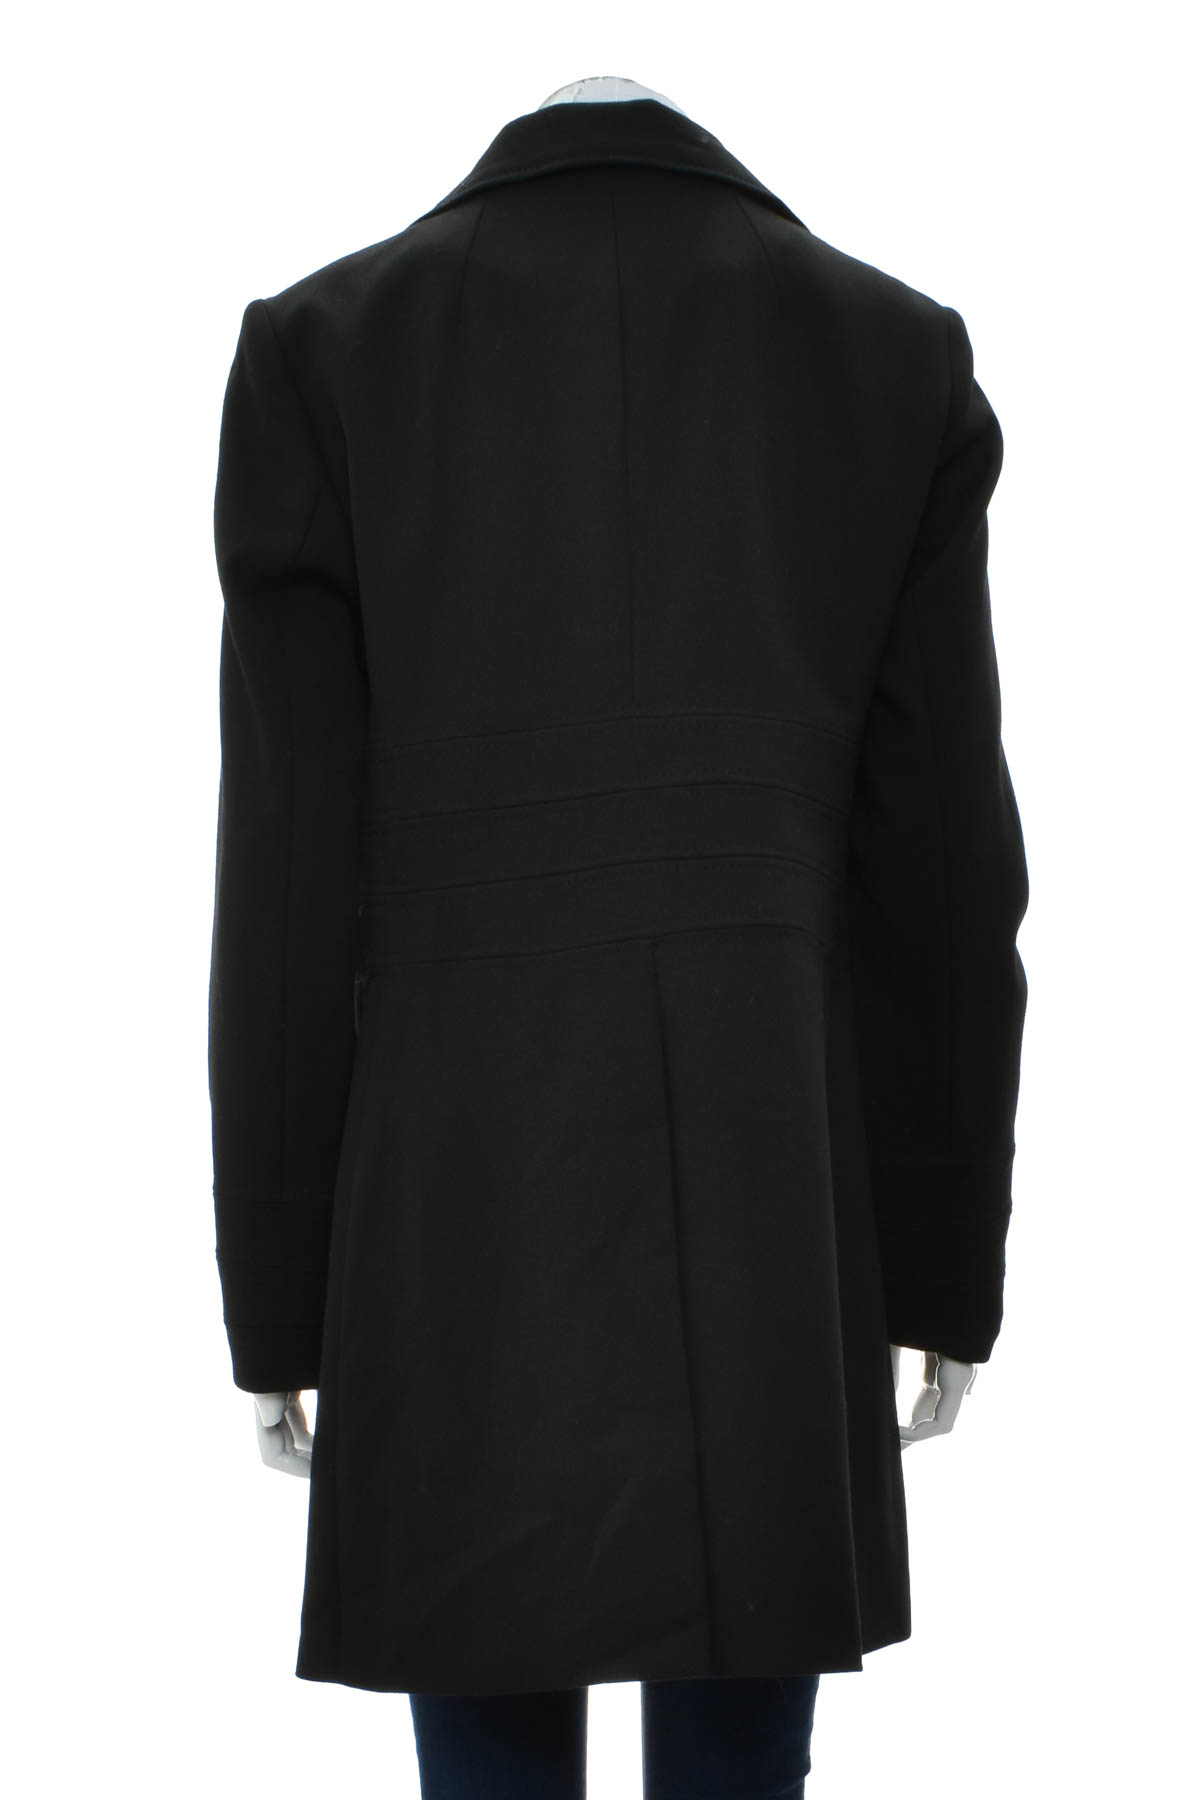 Women's coat - MEXX METROPOLITAN - 1